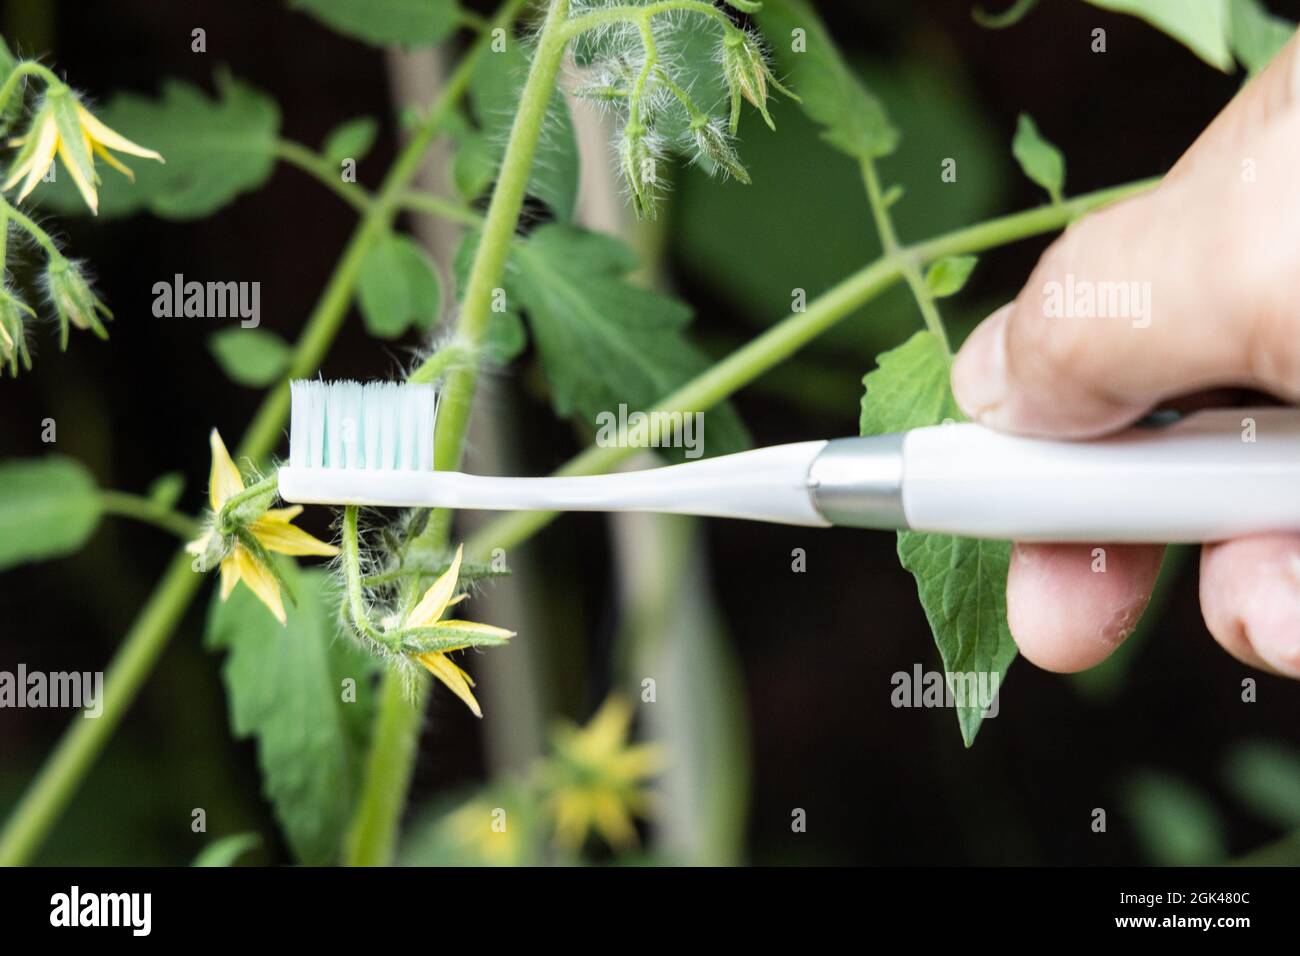 Tenendo a mano lo spazzolino elettrico vibrante tentare di impollinare manualmente il fiore della pianta di pomodoro Foto Stock